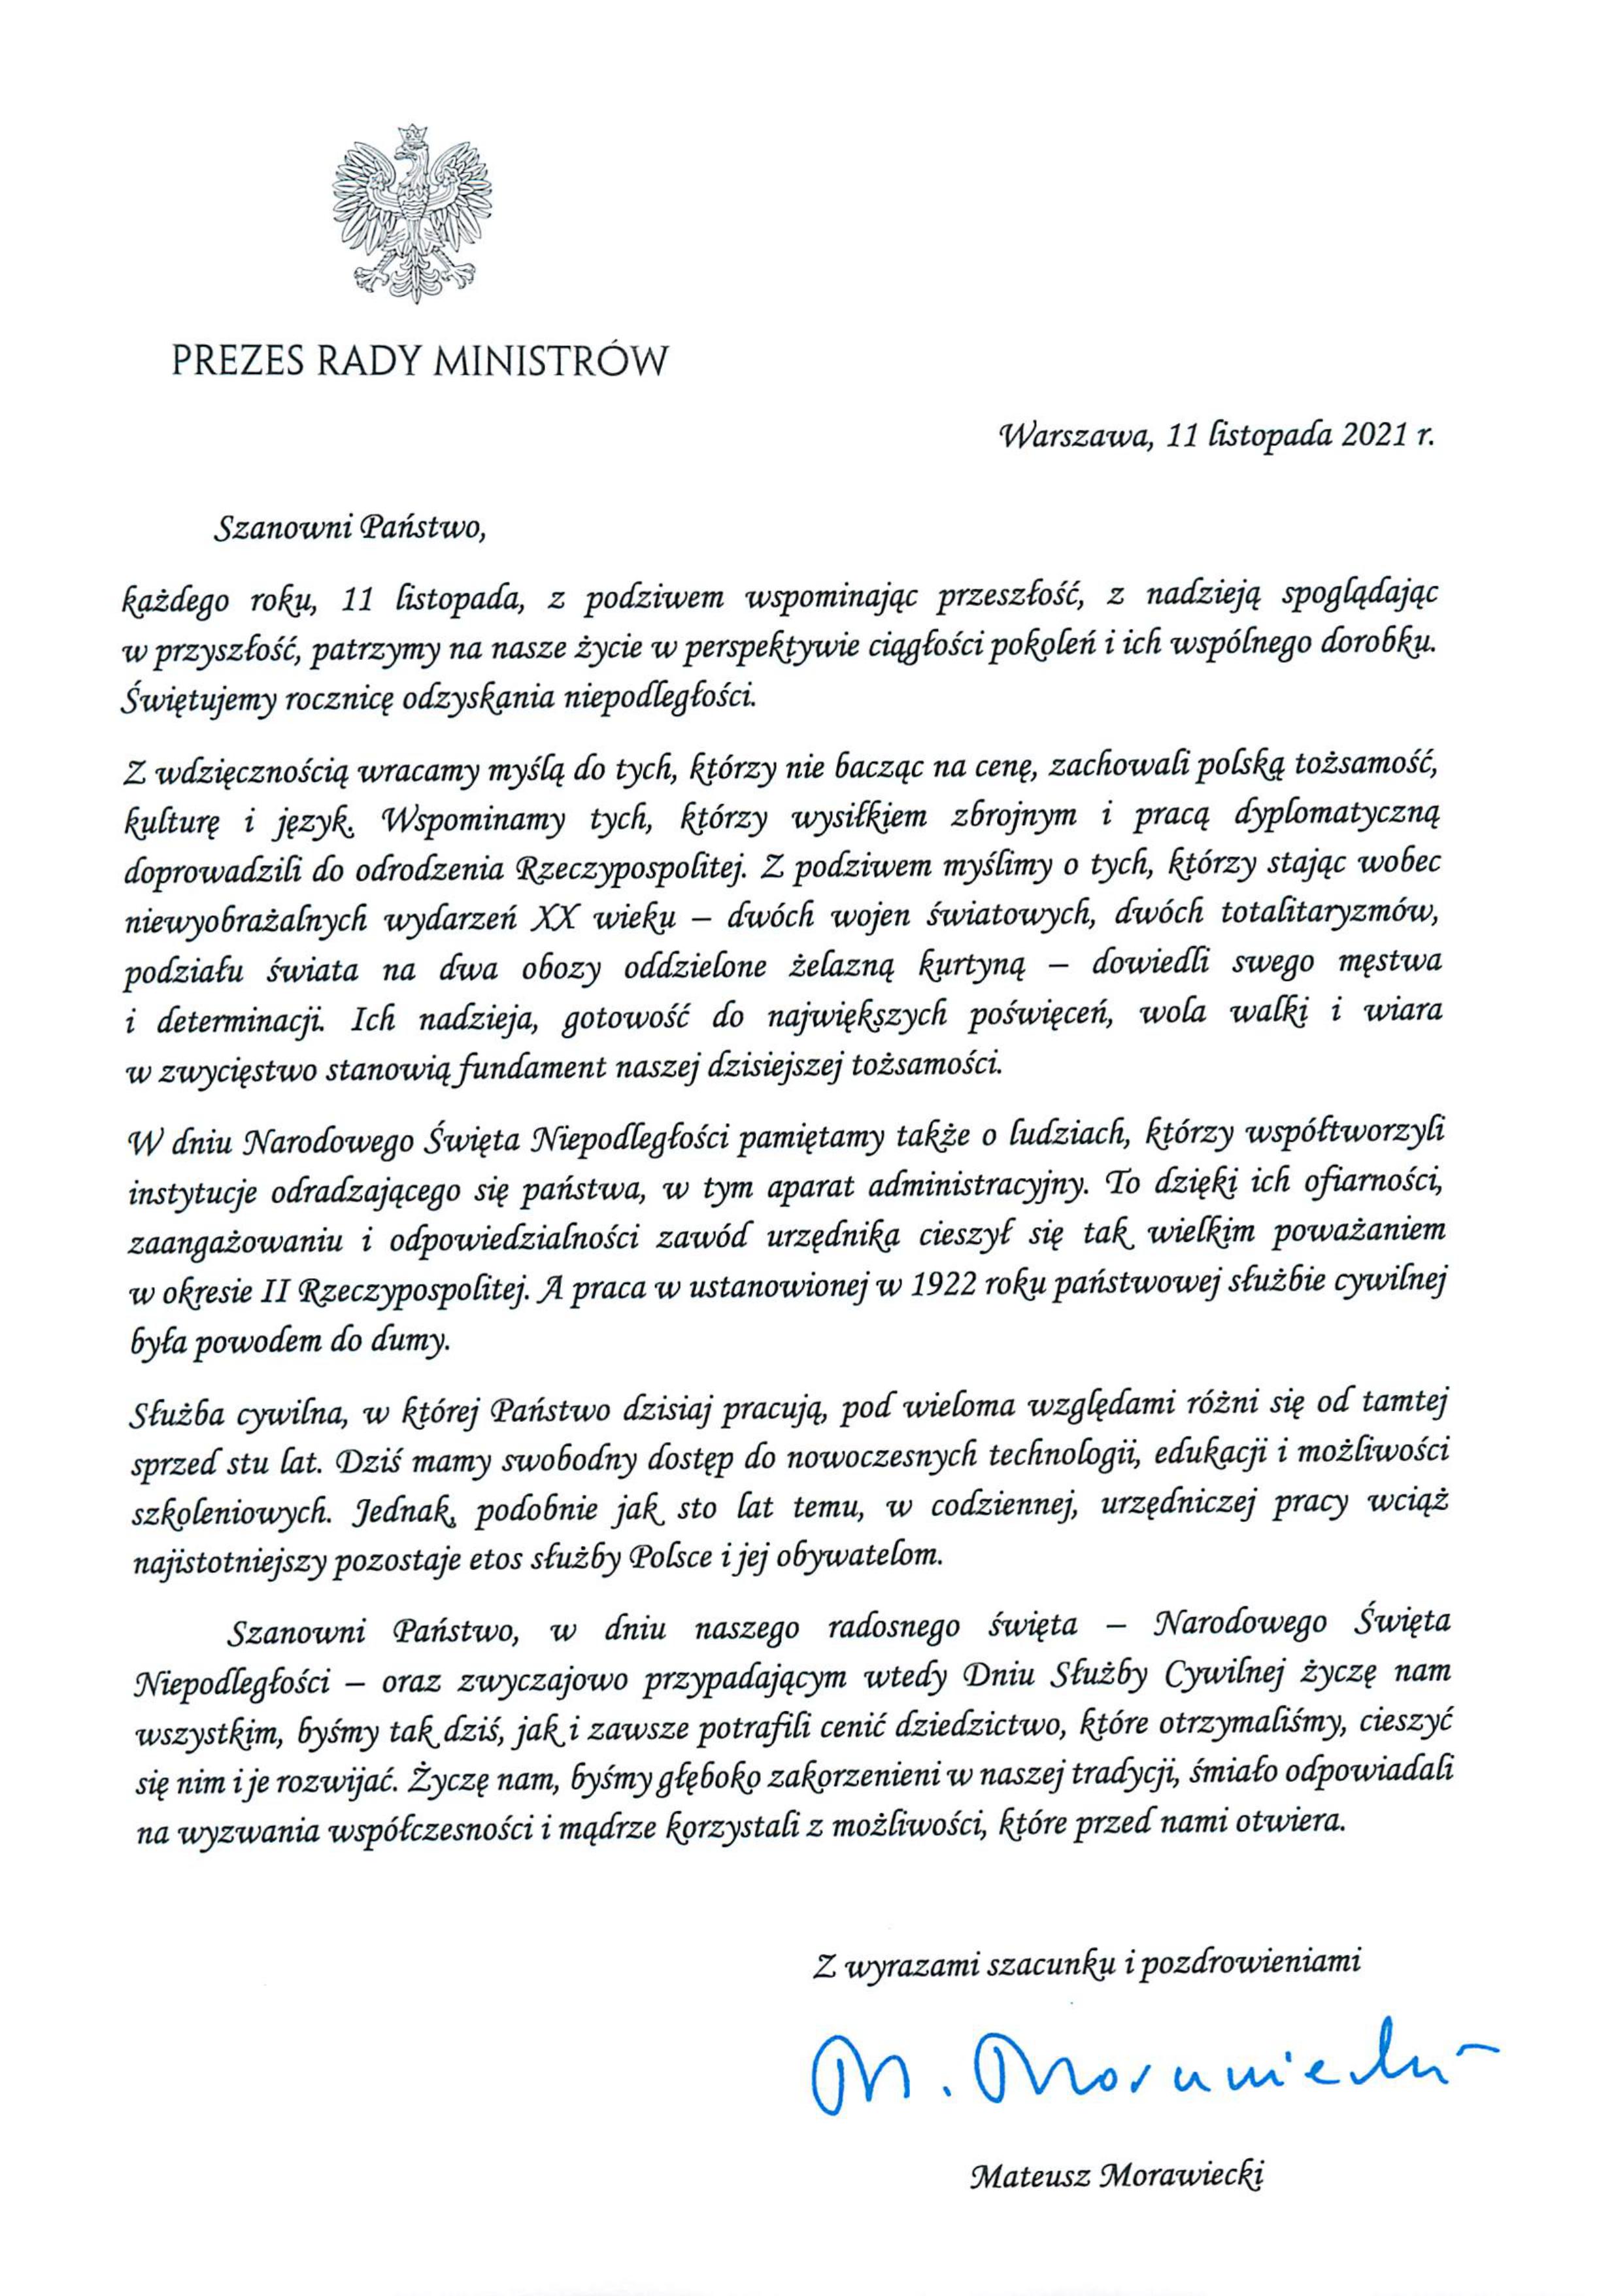 List Pezesa Rady Ministrów do członków korpusu służby cywilnej-obrazy